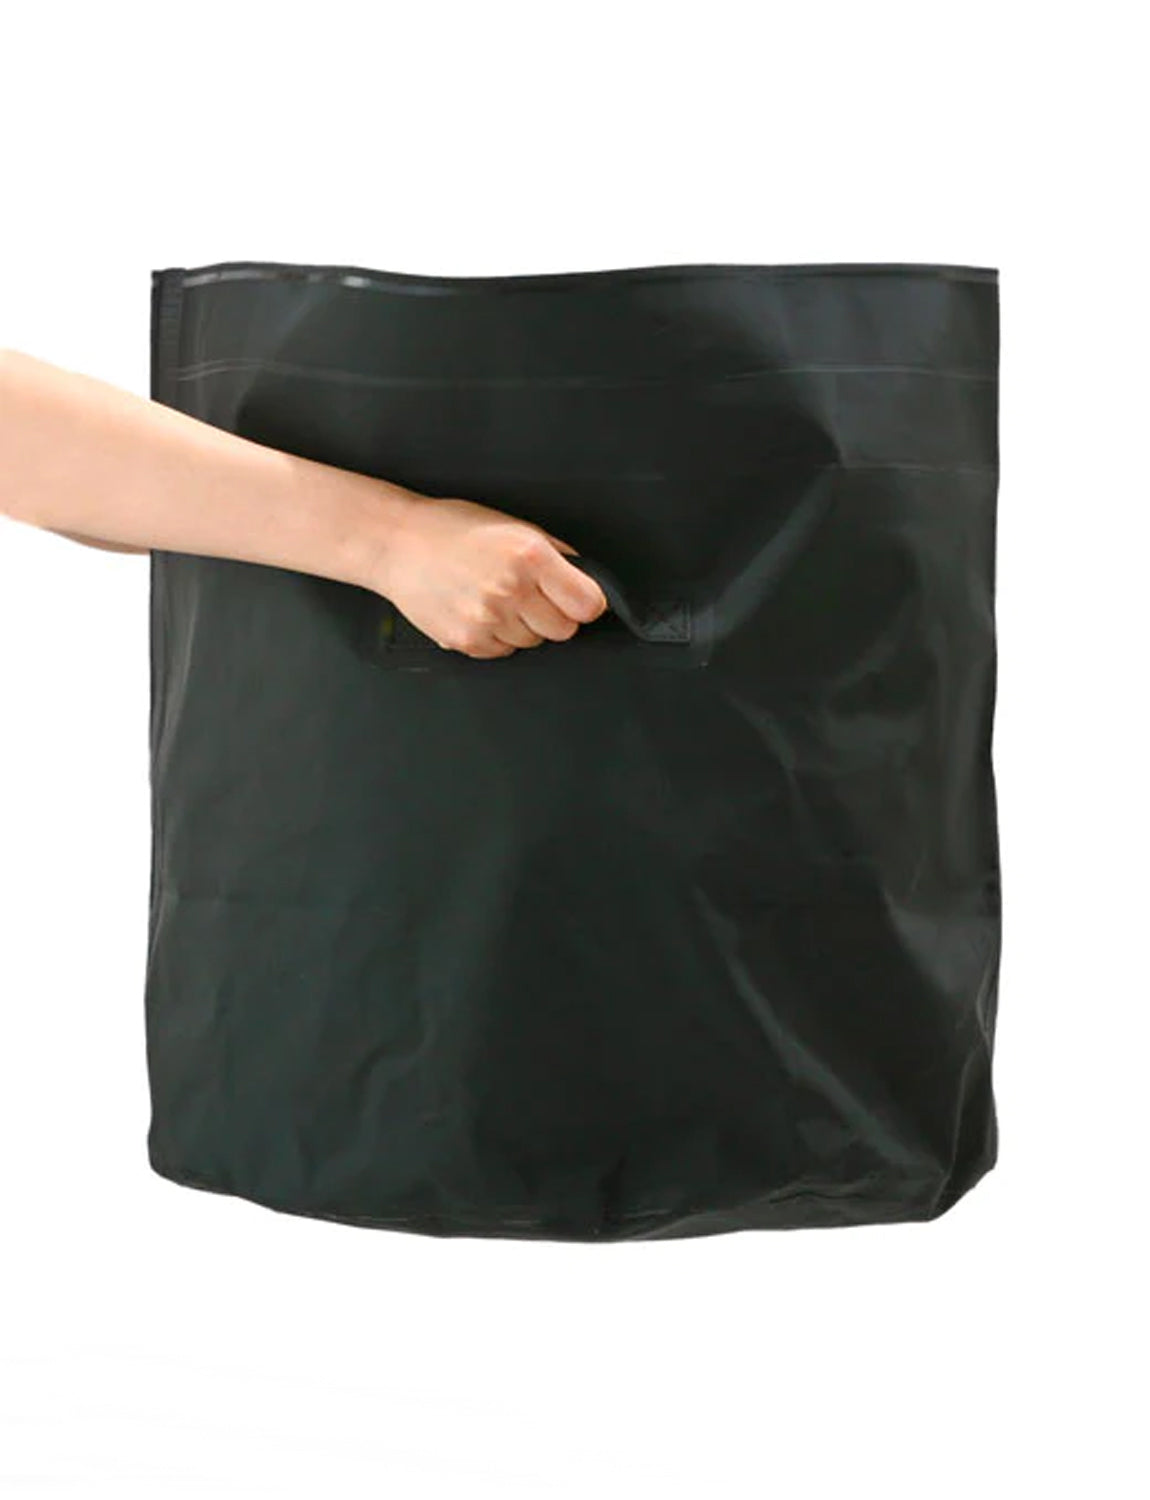 Tarp Bag Round, large